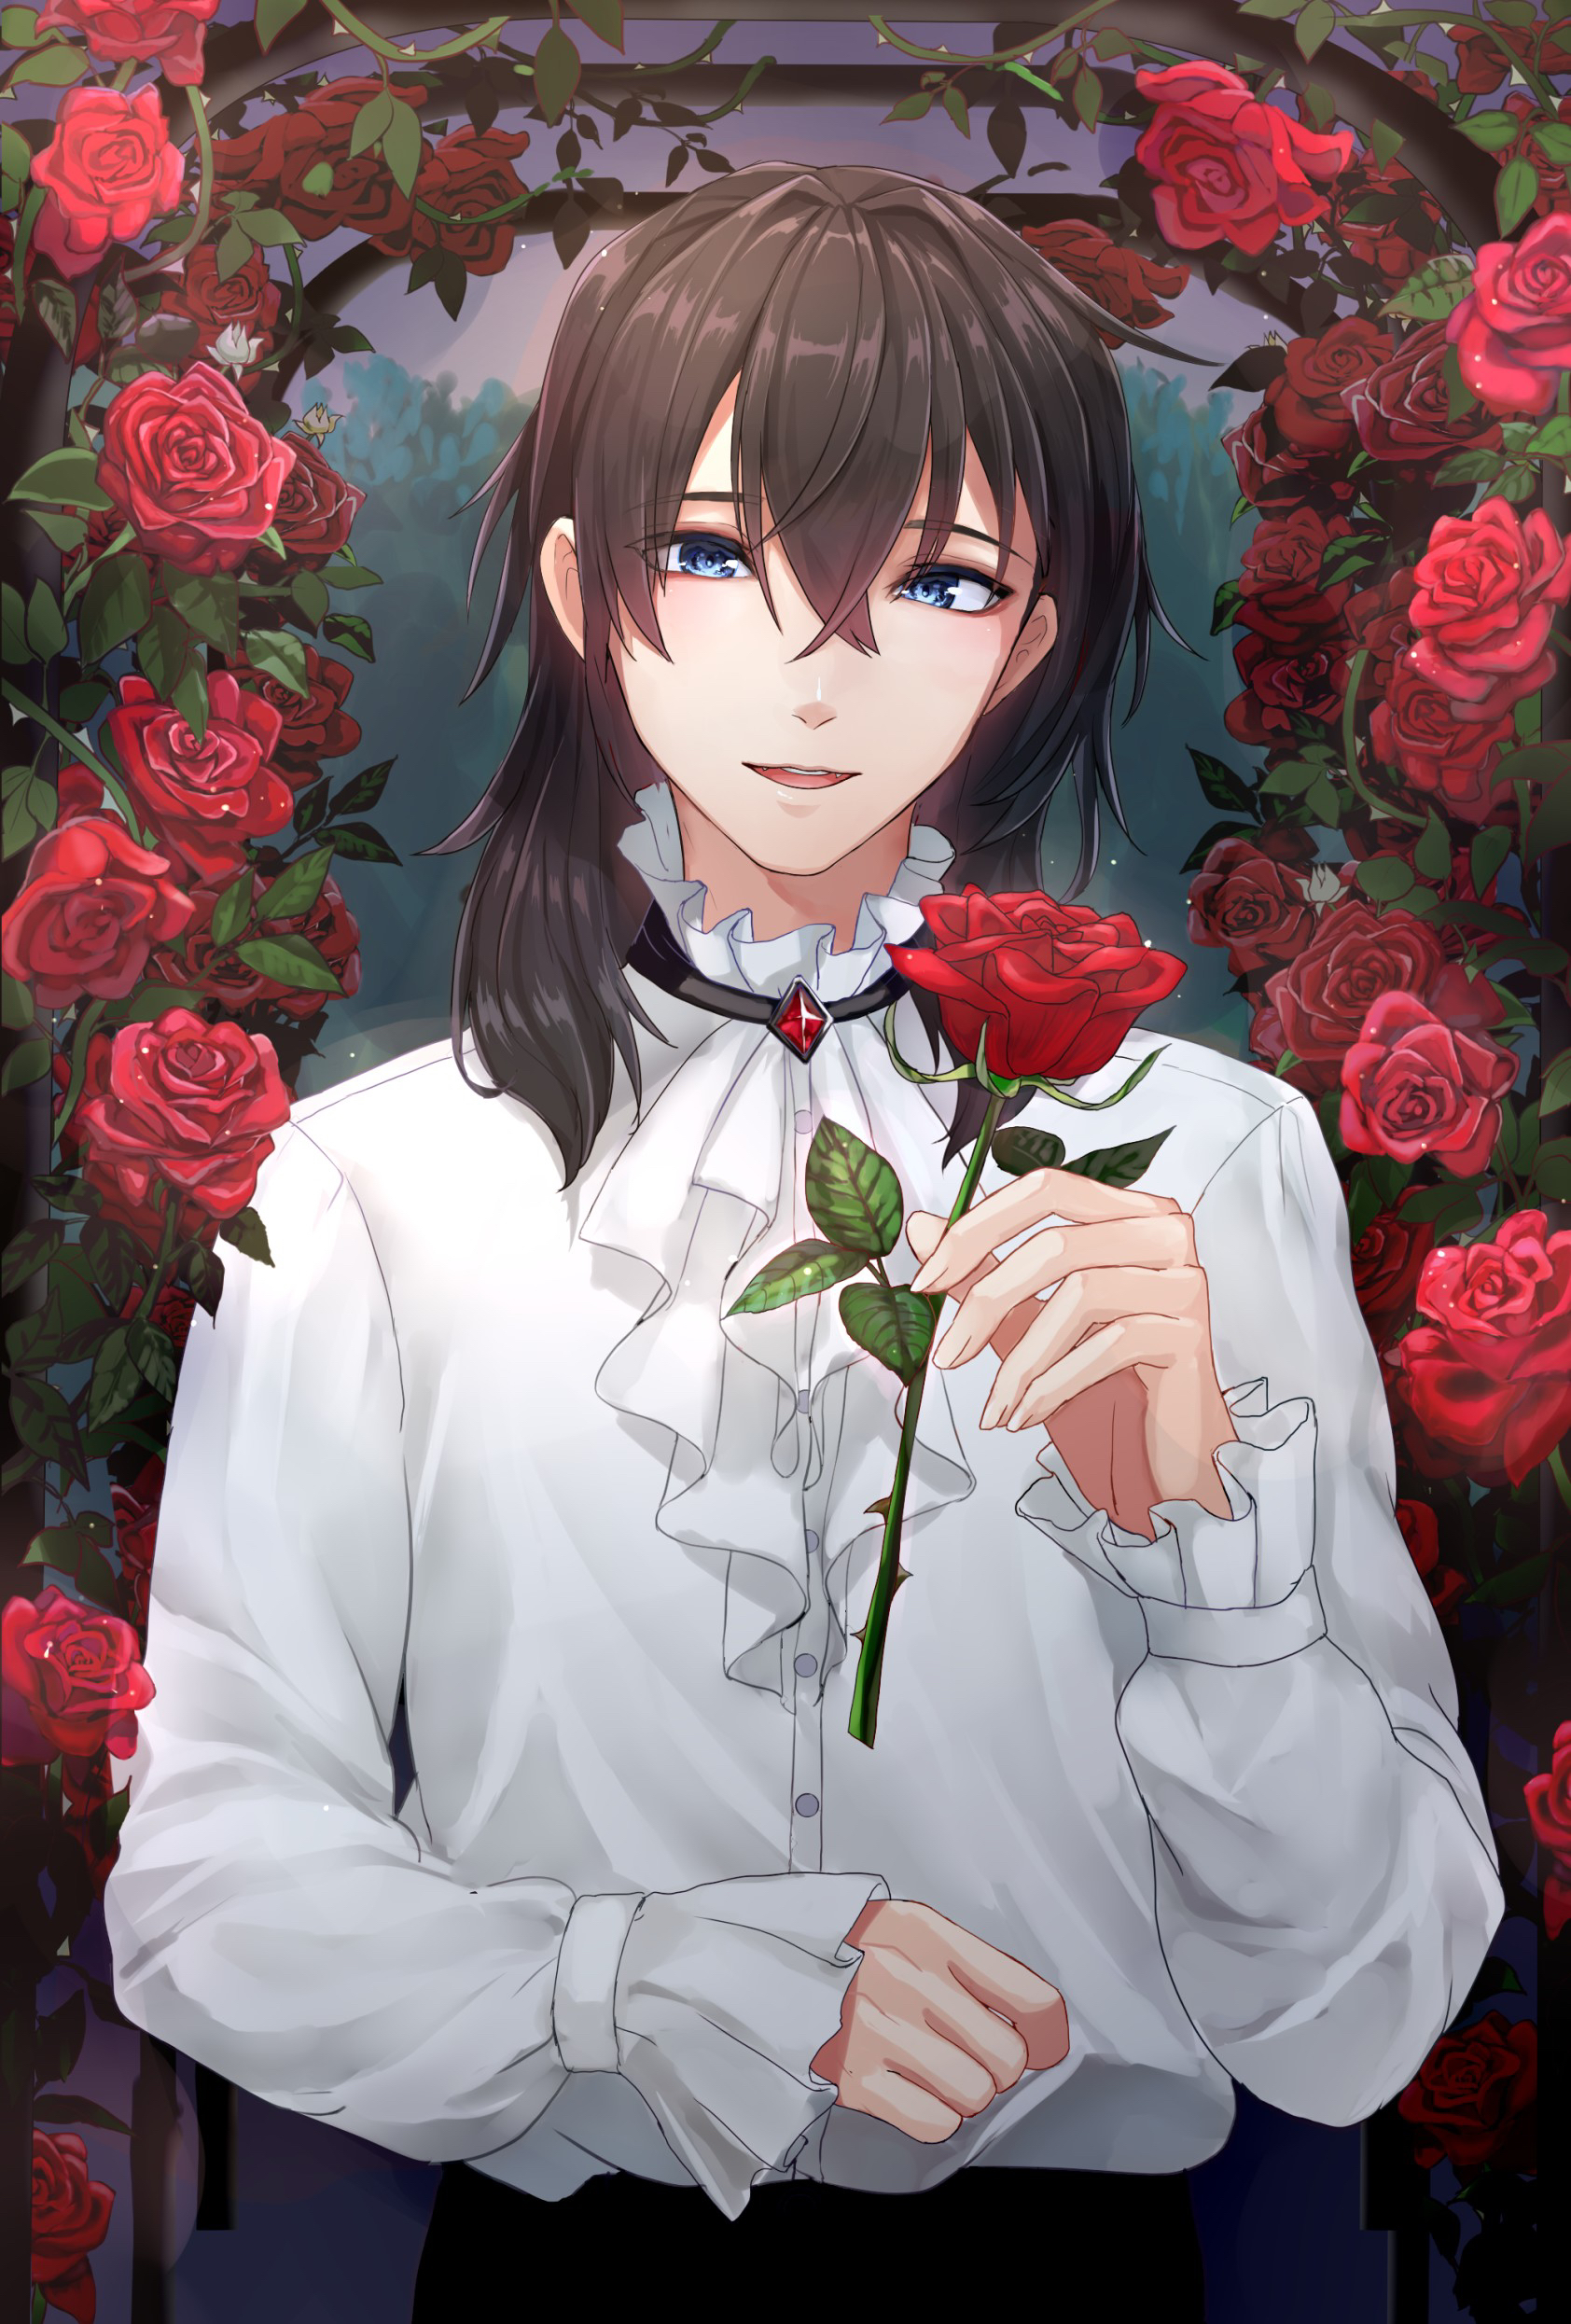 Boy Roses Flowers Anime